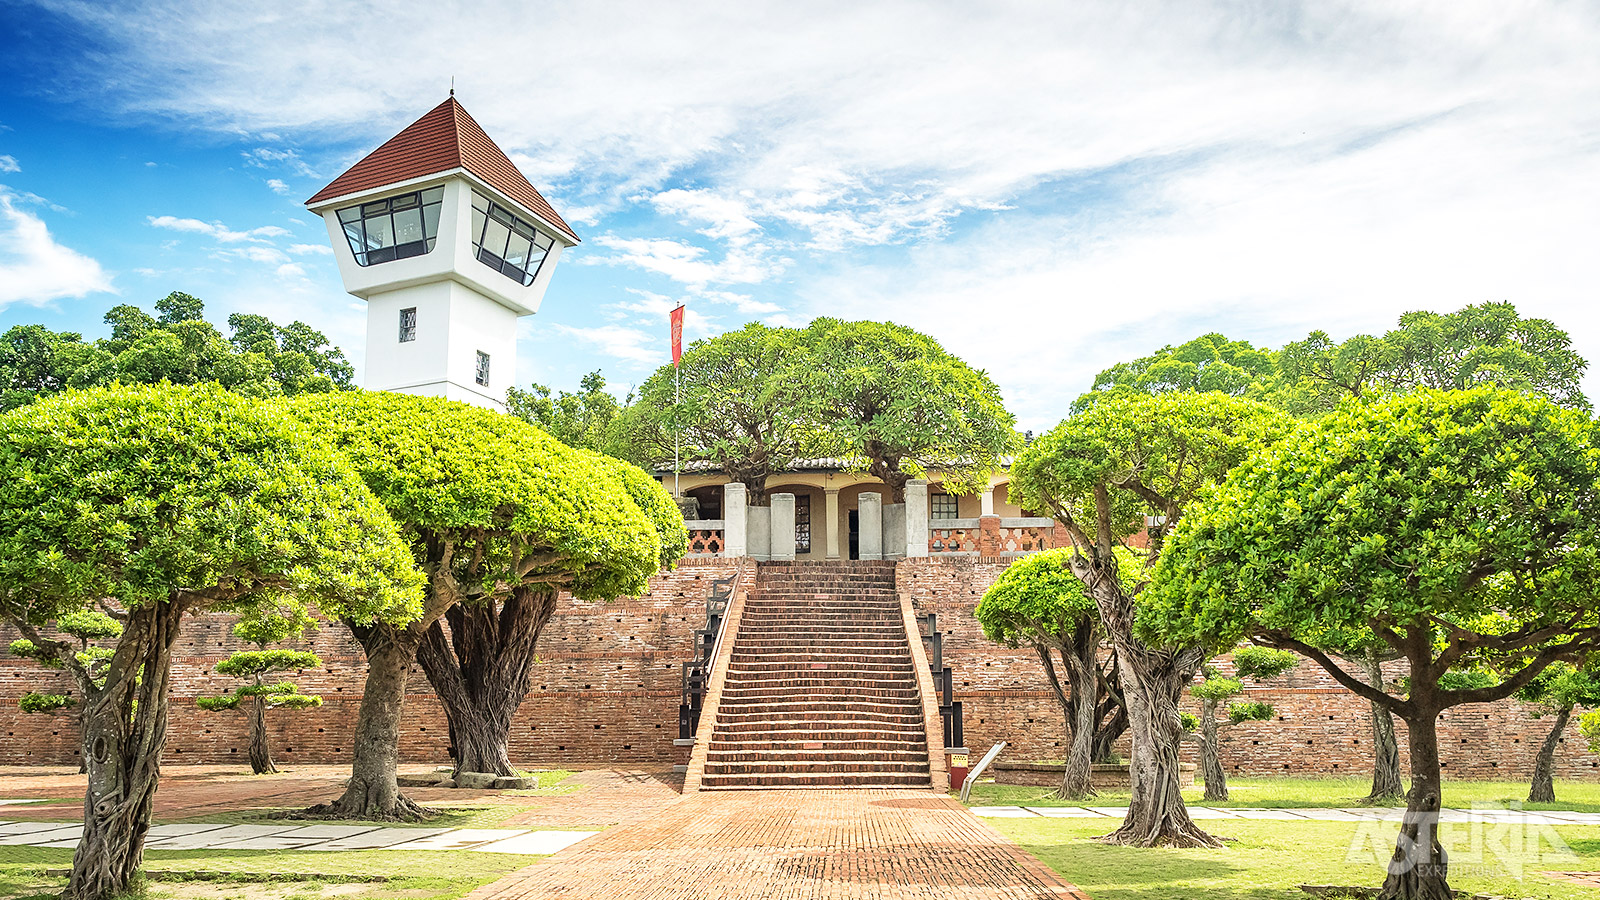 Het Anping Fort werd door de Vereenigde Oostindische Compagnie tussen 1624 en 1634 gebouwd op het zanderige kleine eiland Taoyuan